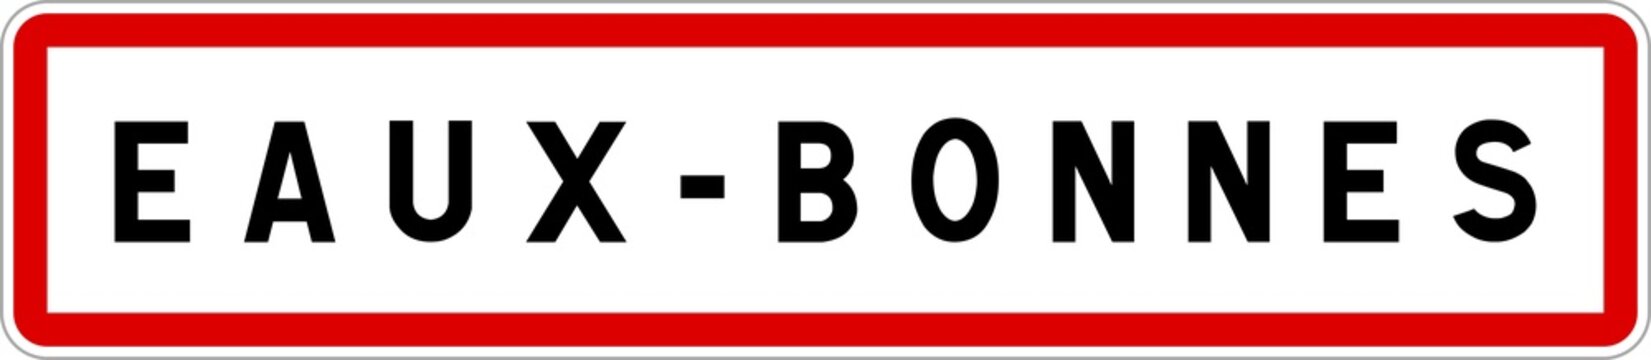 Panneau entrée ville agglomération Eaux-Bonnes / Town entrance sign Eaux-Bonnes